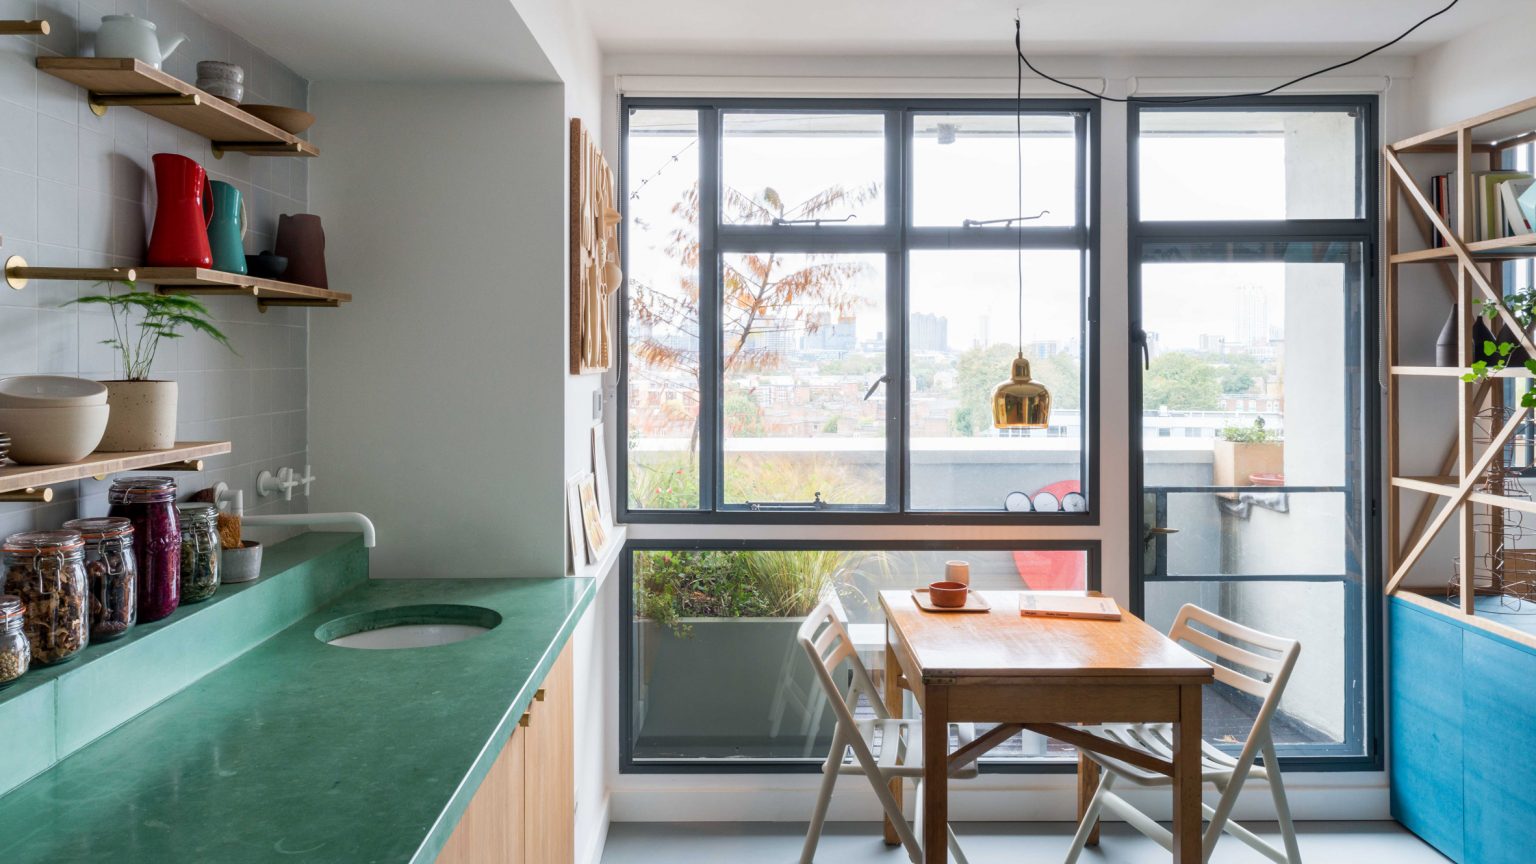 Một chiếc tủ sơn xanh lam kết hợp kệ gỗ kiểu lưới mắt cáo, đóng vai trò làm vách ngăn phòng bếp với phòng khách. Khoảng trống giữa hai khu vực này dành cho bộ bàn ăn bằng gỗ đơn giản và mộc mạc.